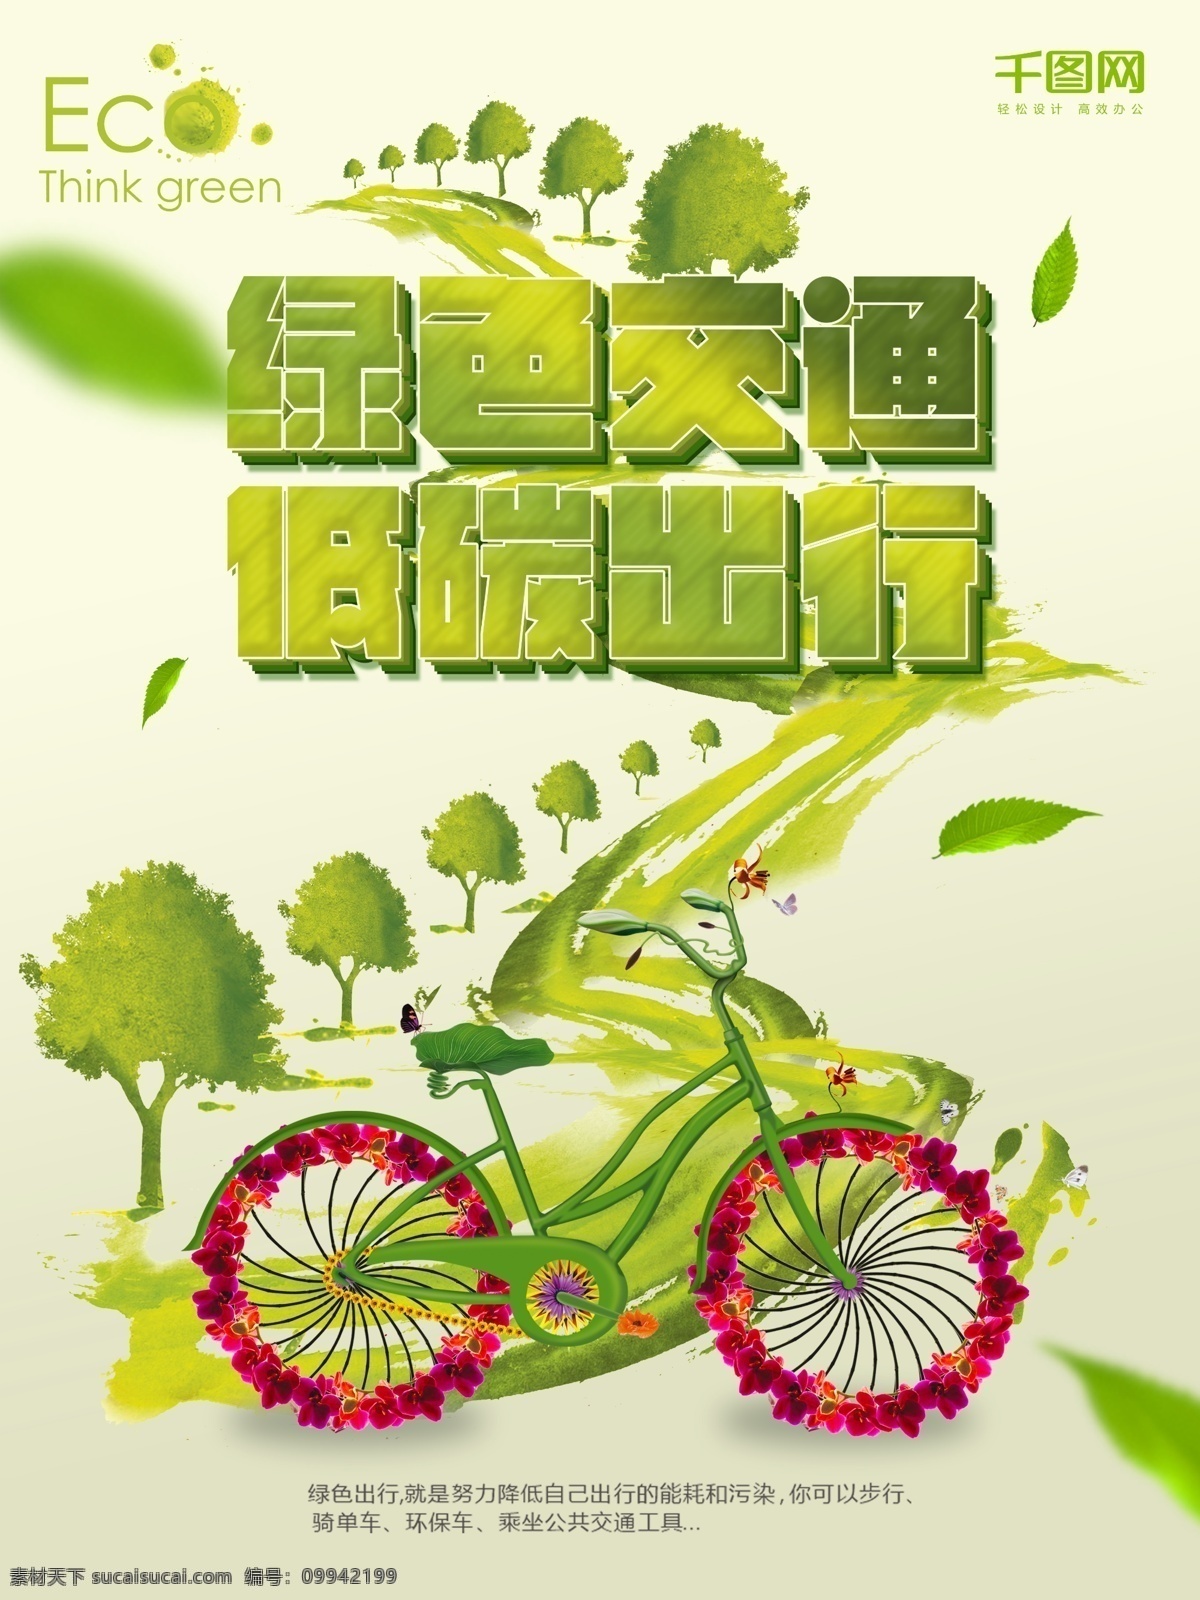 绿色 健康 低 碳 环保 出行 自行车 绿色出行 低碳环保 保护环境 环境保护 绿色生活 爱护地球 绿色健康 节能环保 骑行 低碳生活 绿色环保